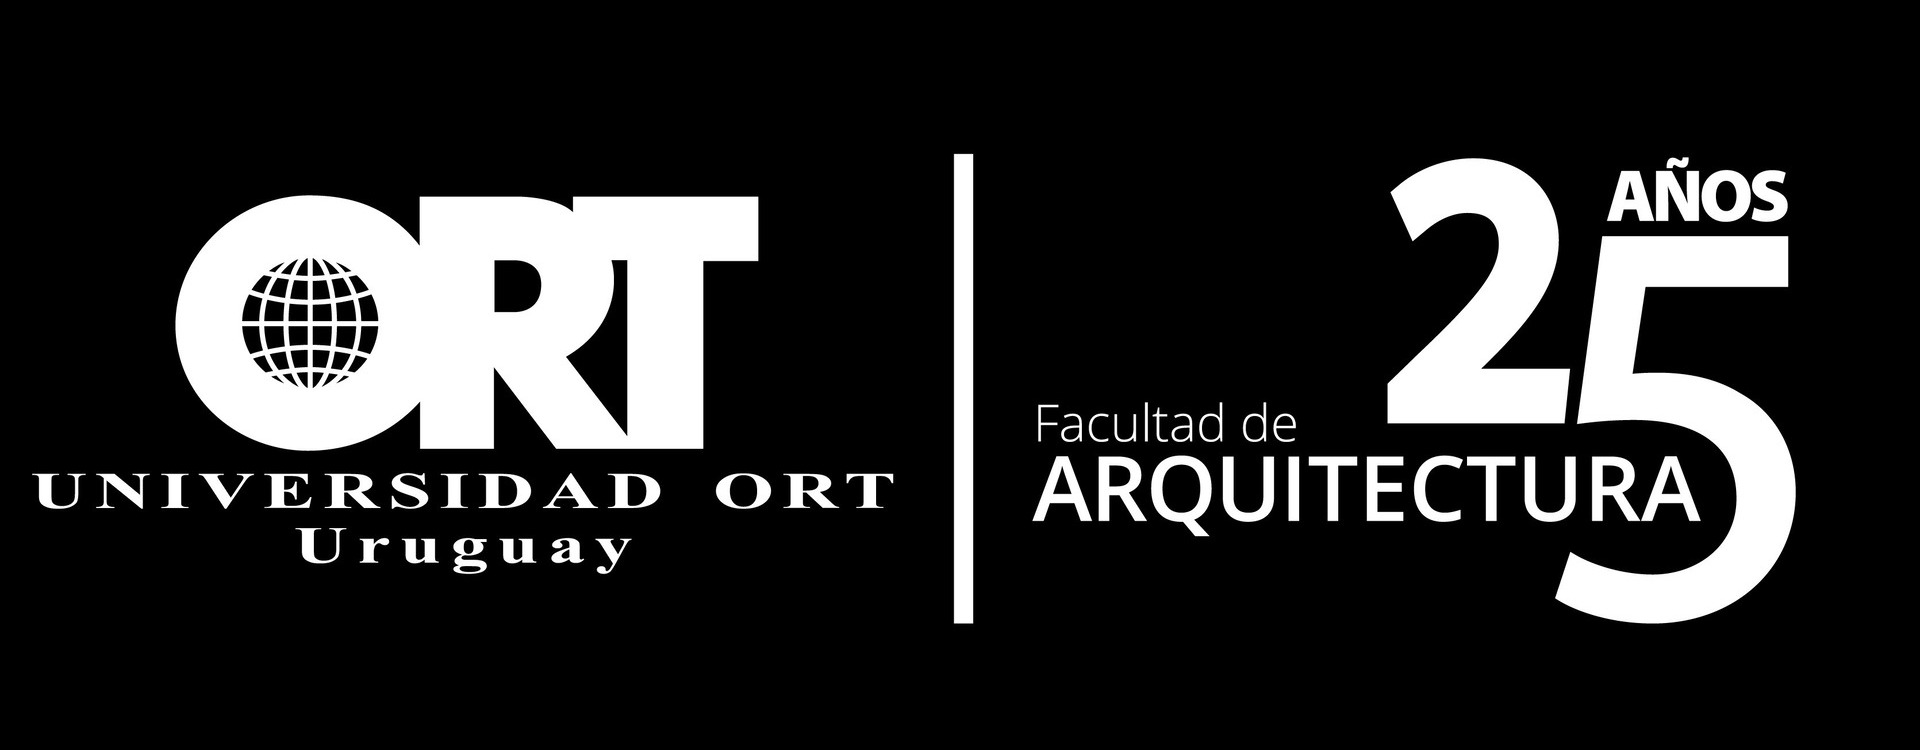 25 años de la Facultad de Arquitectura de la Universidad ORT Uruguay.